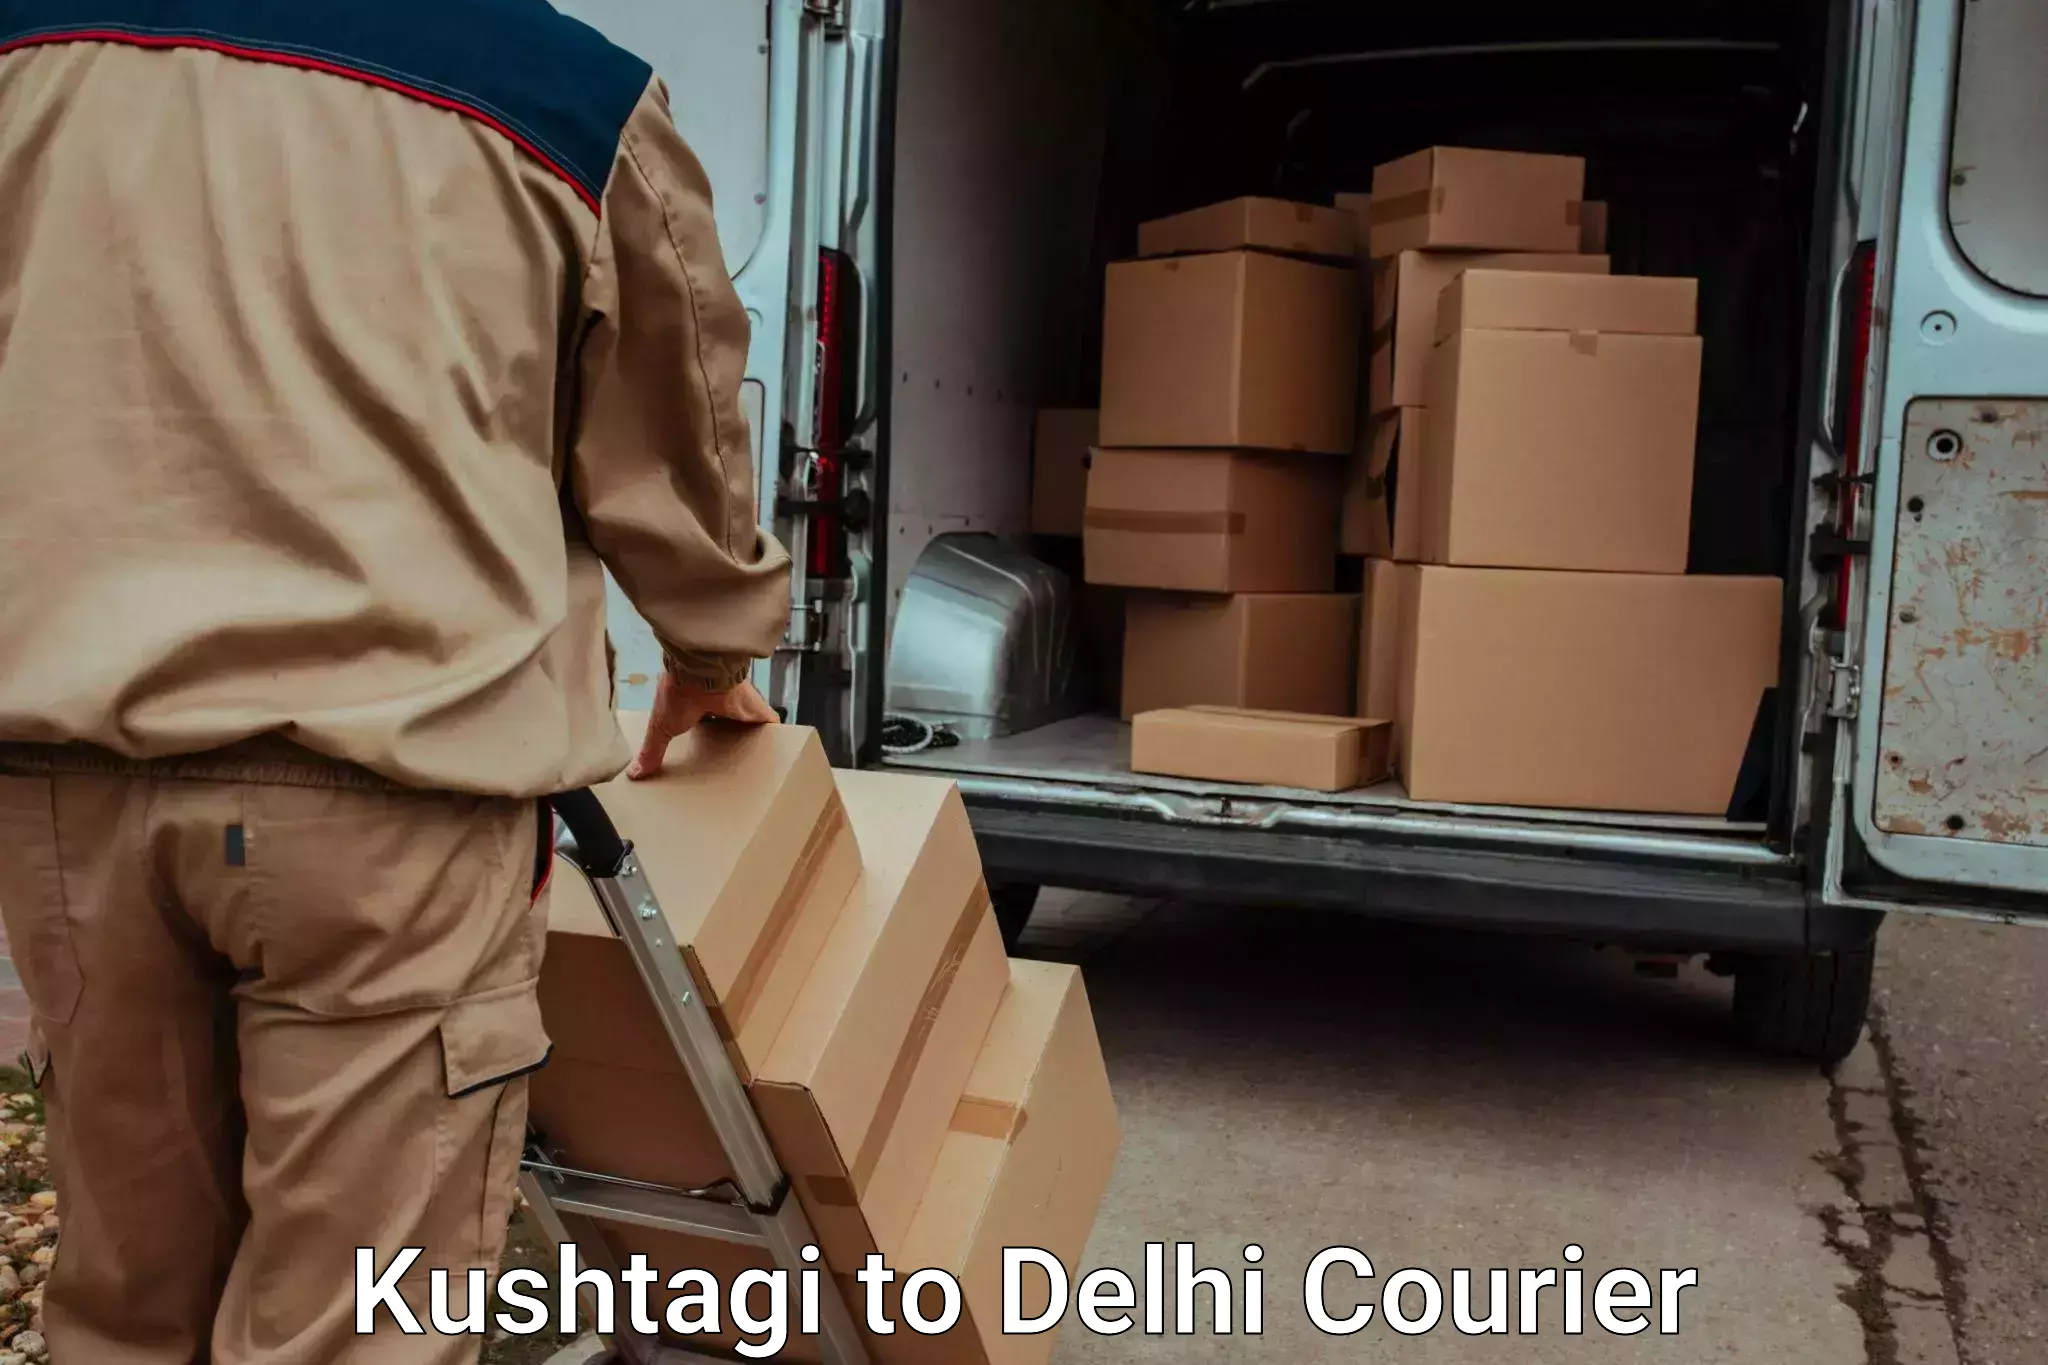 Luggage delivery network Kushtagi to University of Delhi